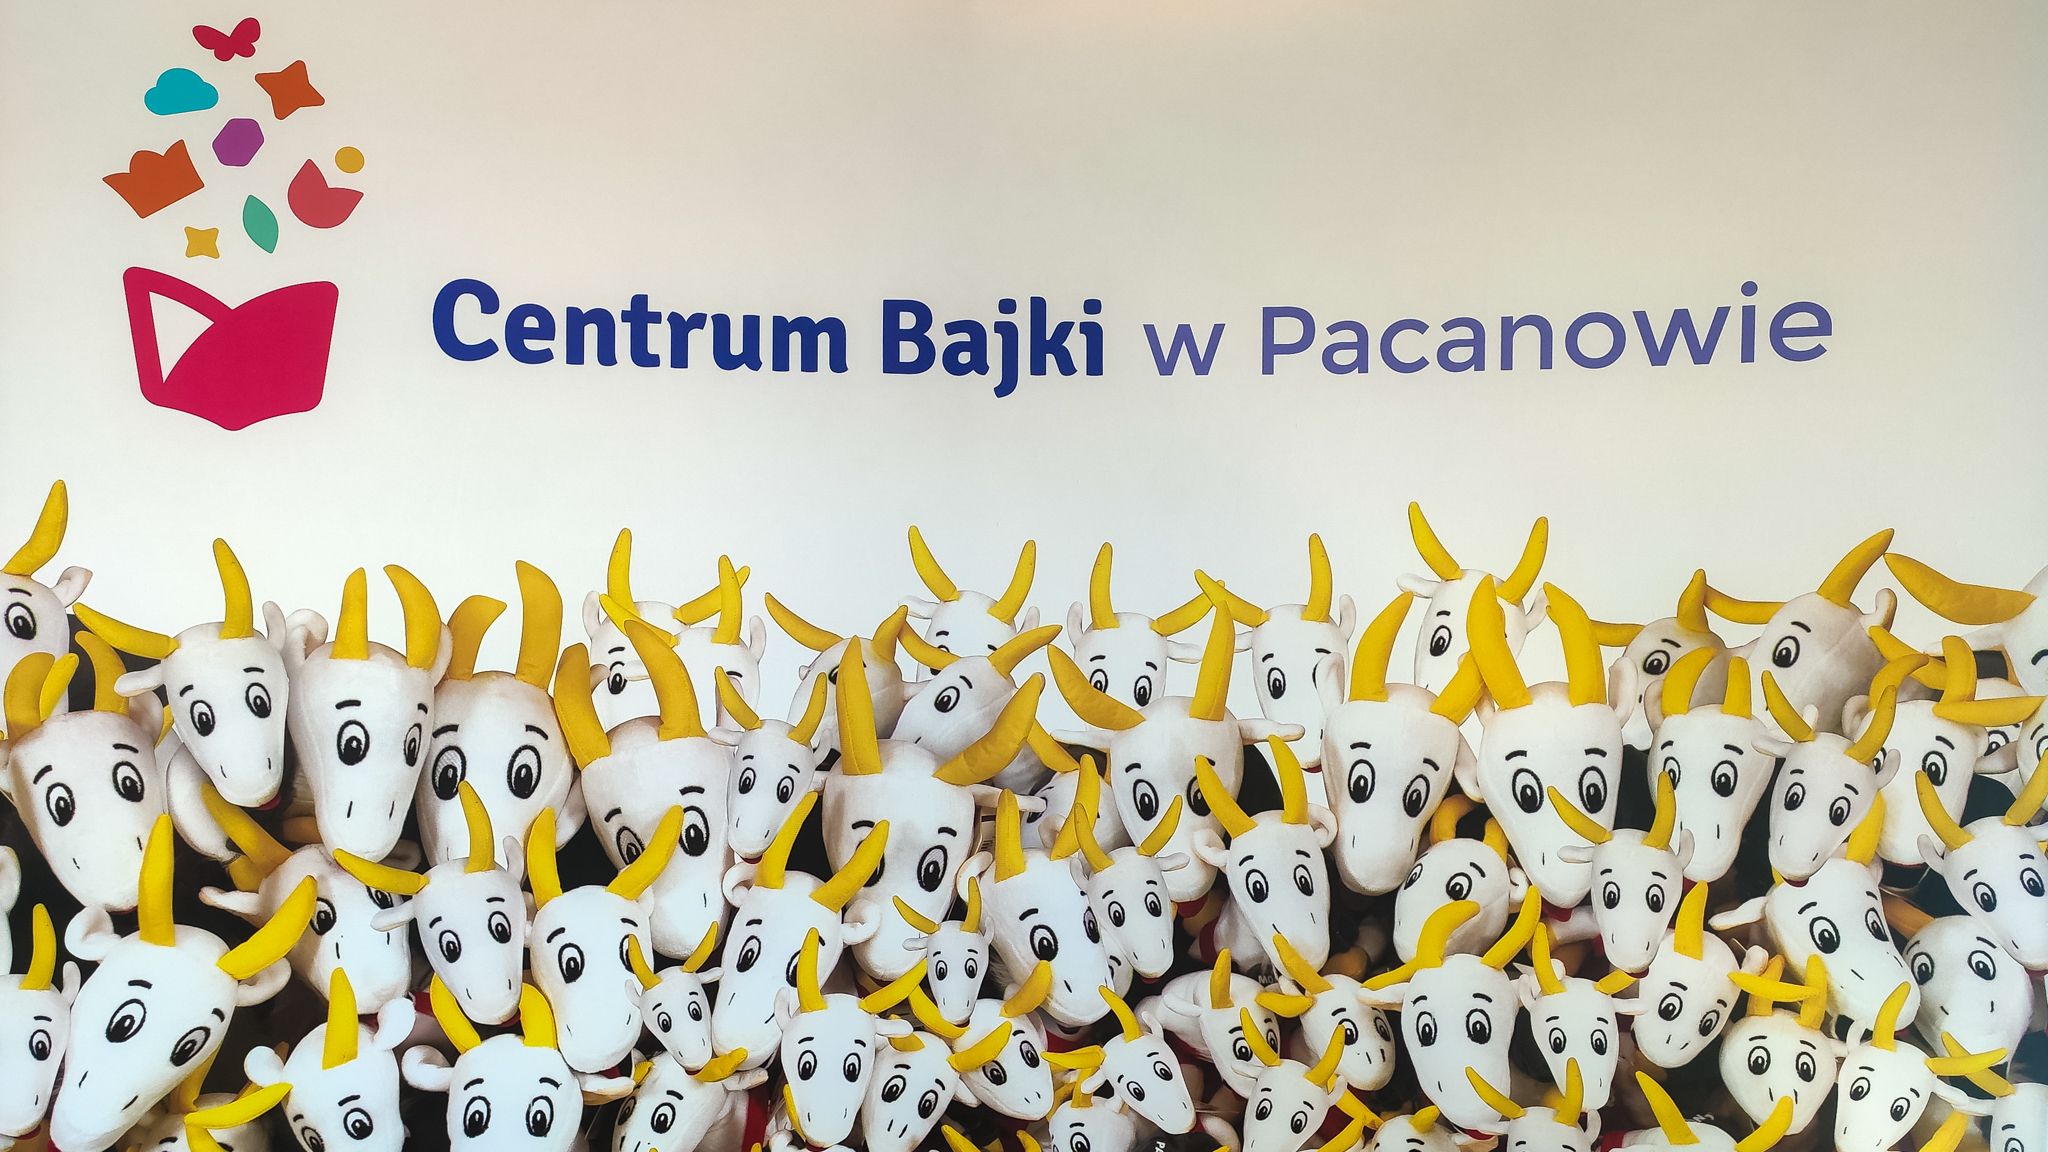 Ścianka do robienie zdjęć - z napisem; "Centrum Bajki w Pacanowie", pod spodem wymalowane maskotki Koziołka Matołka.